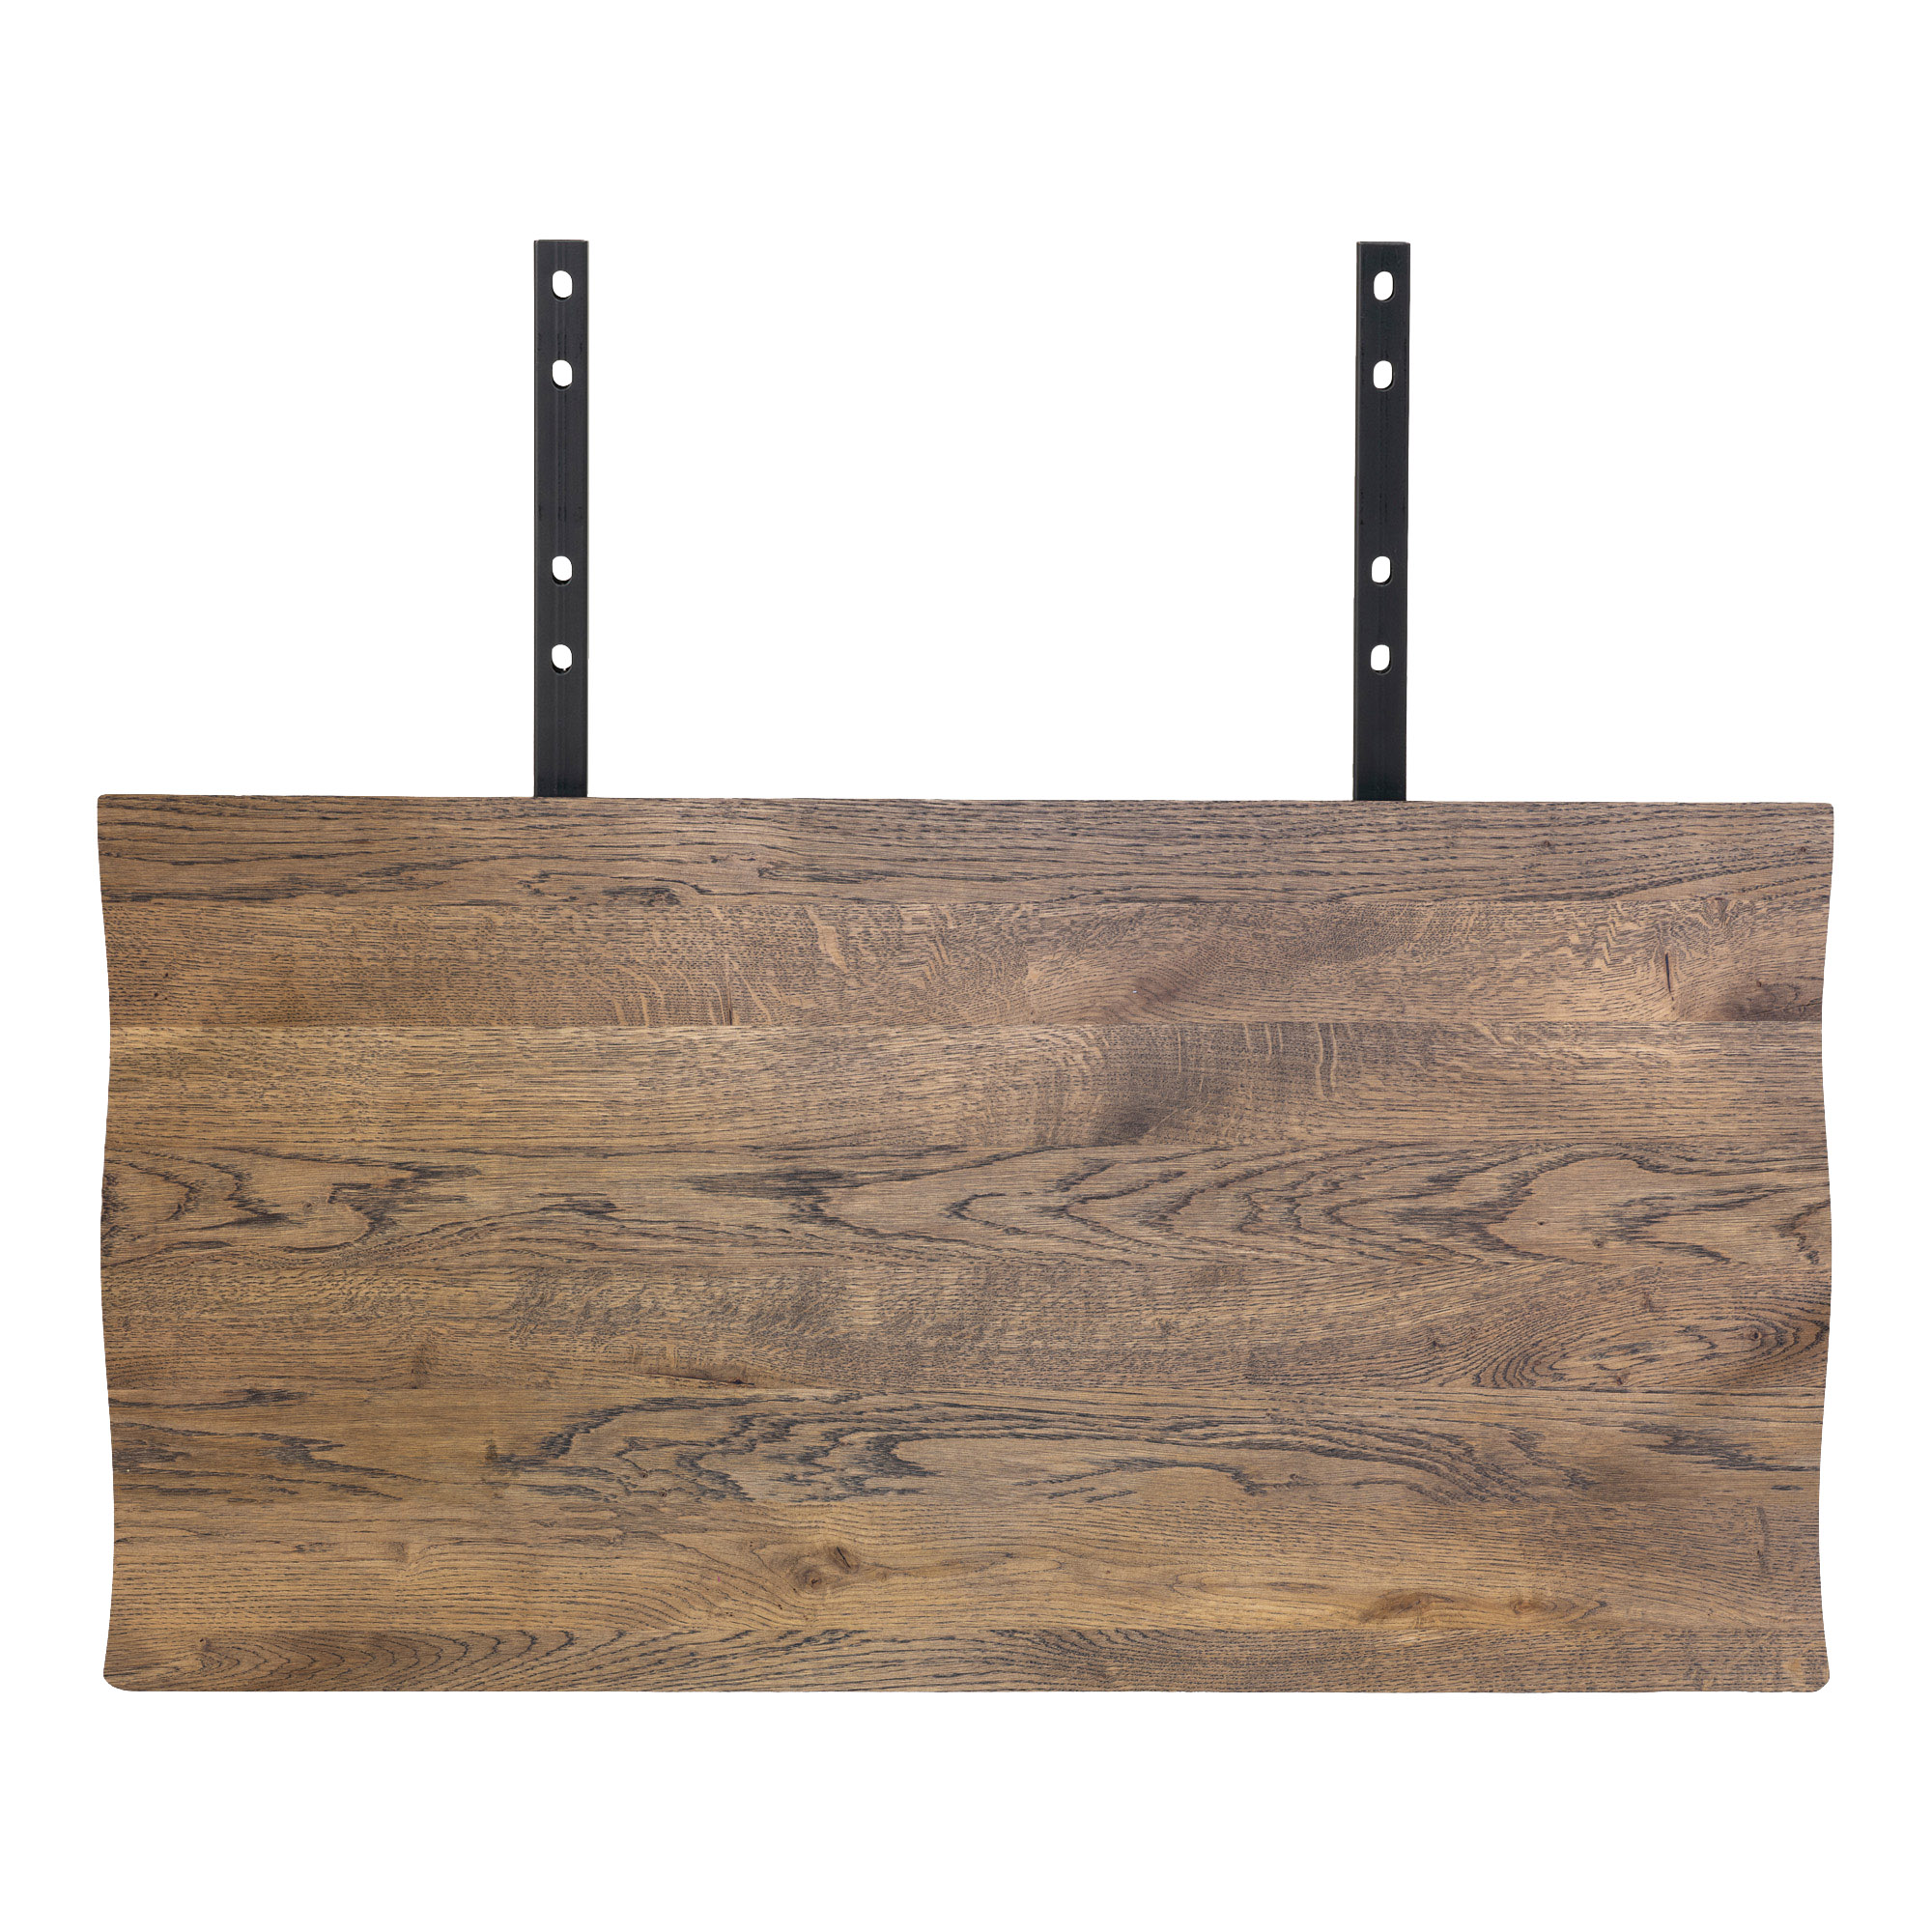 6: Juva - Spisebord i røget  eg, 95 x 200 cm, med eller uden tillægsplader Med 2 tillægsplader